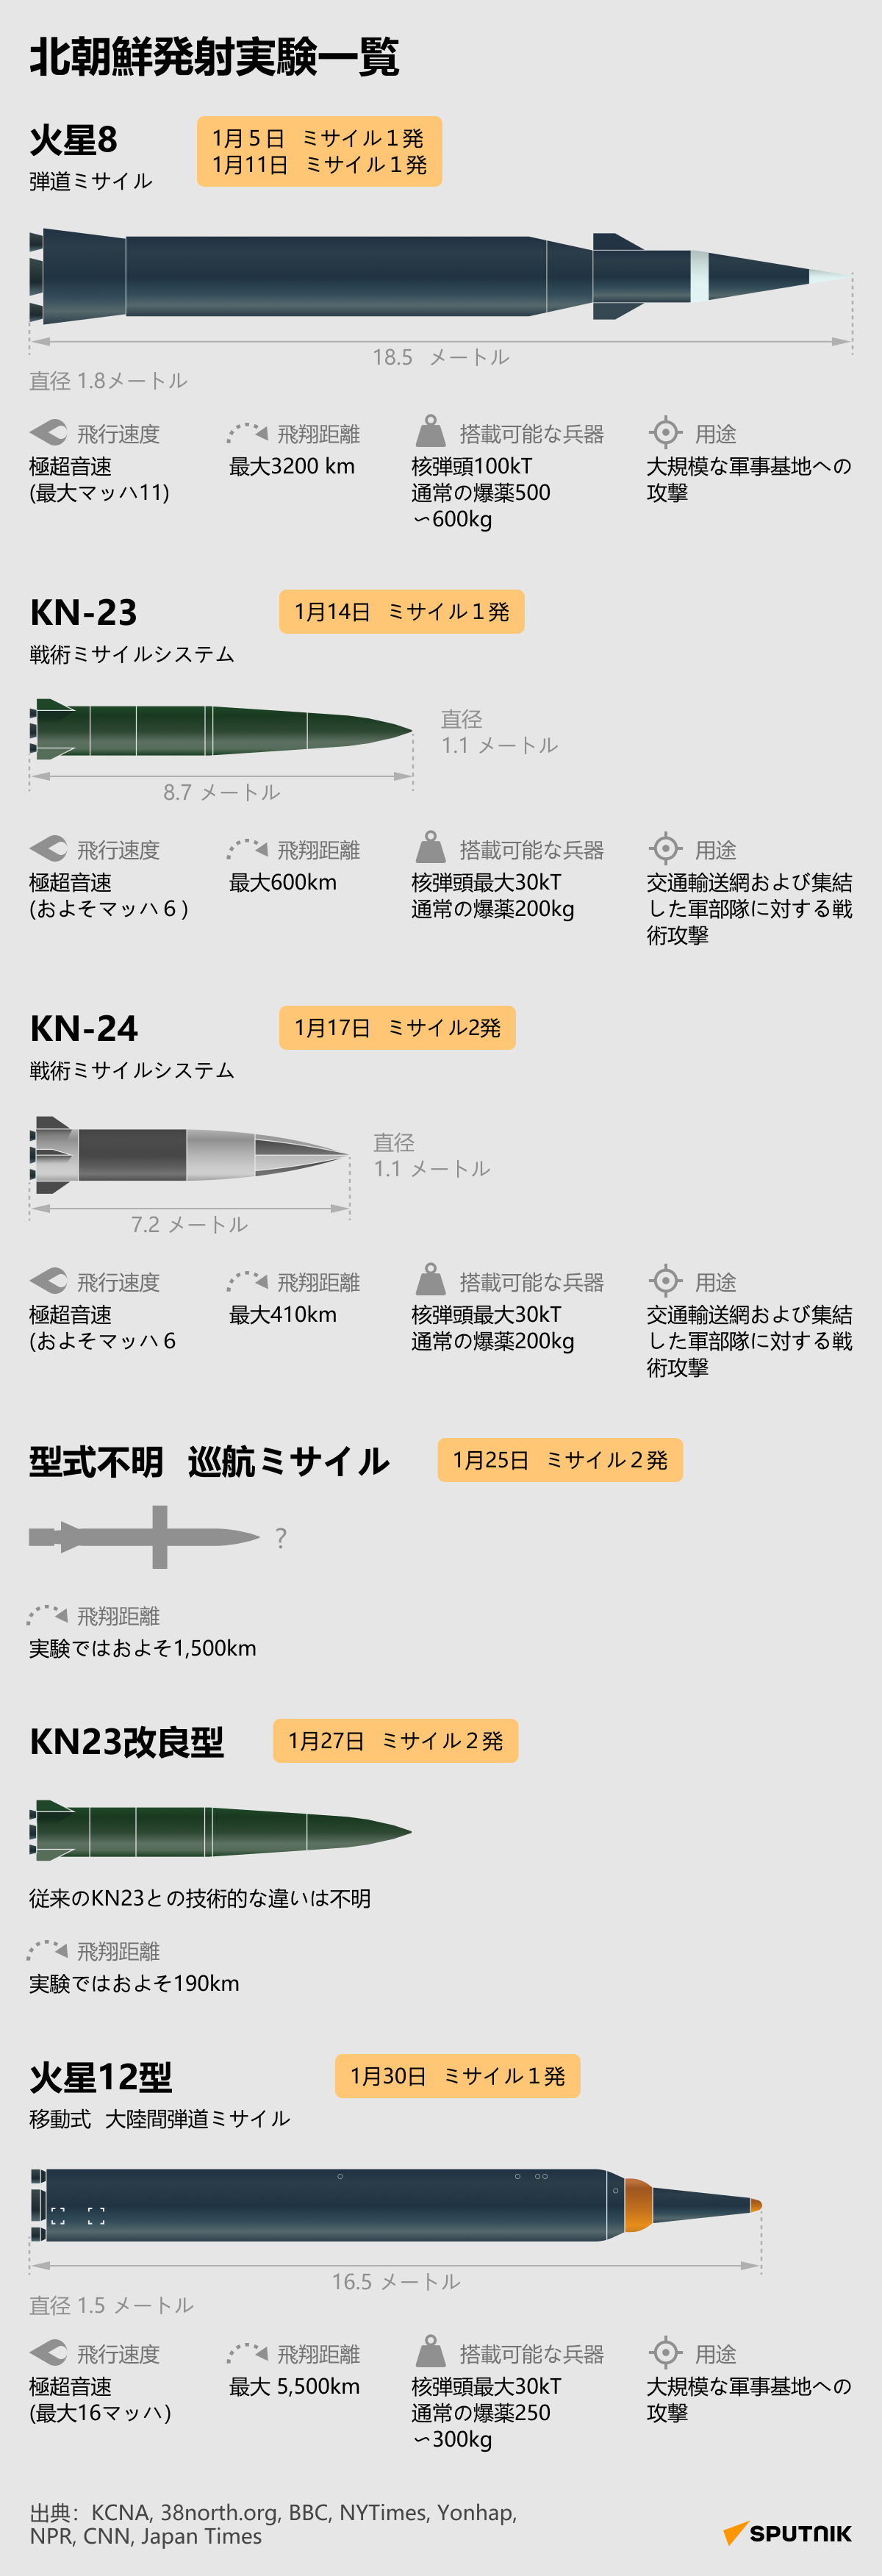 北朝鮮発射実験一覧 - Sputnik 日本